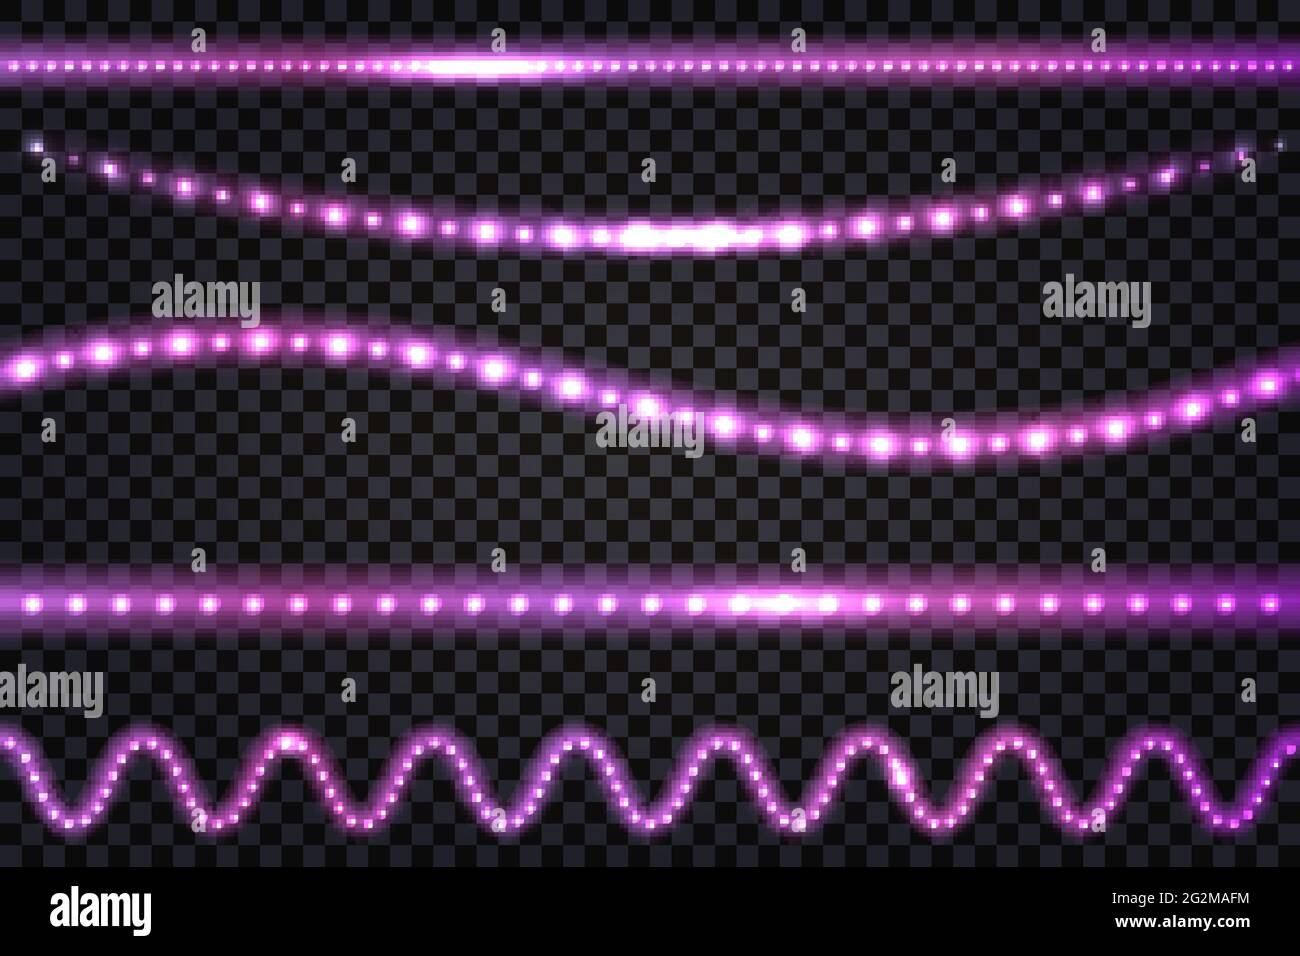 LED-Lichtgirlanden mit Neon-Glow-Effekt, Glitzerlicht-Set aus Linien, beleuchtete Streifen und Wellen, isolierte Bänder auf transparentem Hintergrund. Vektor Stock Vektor